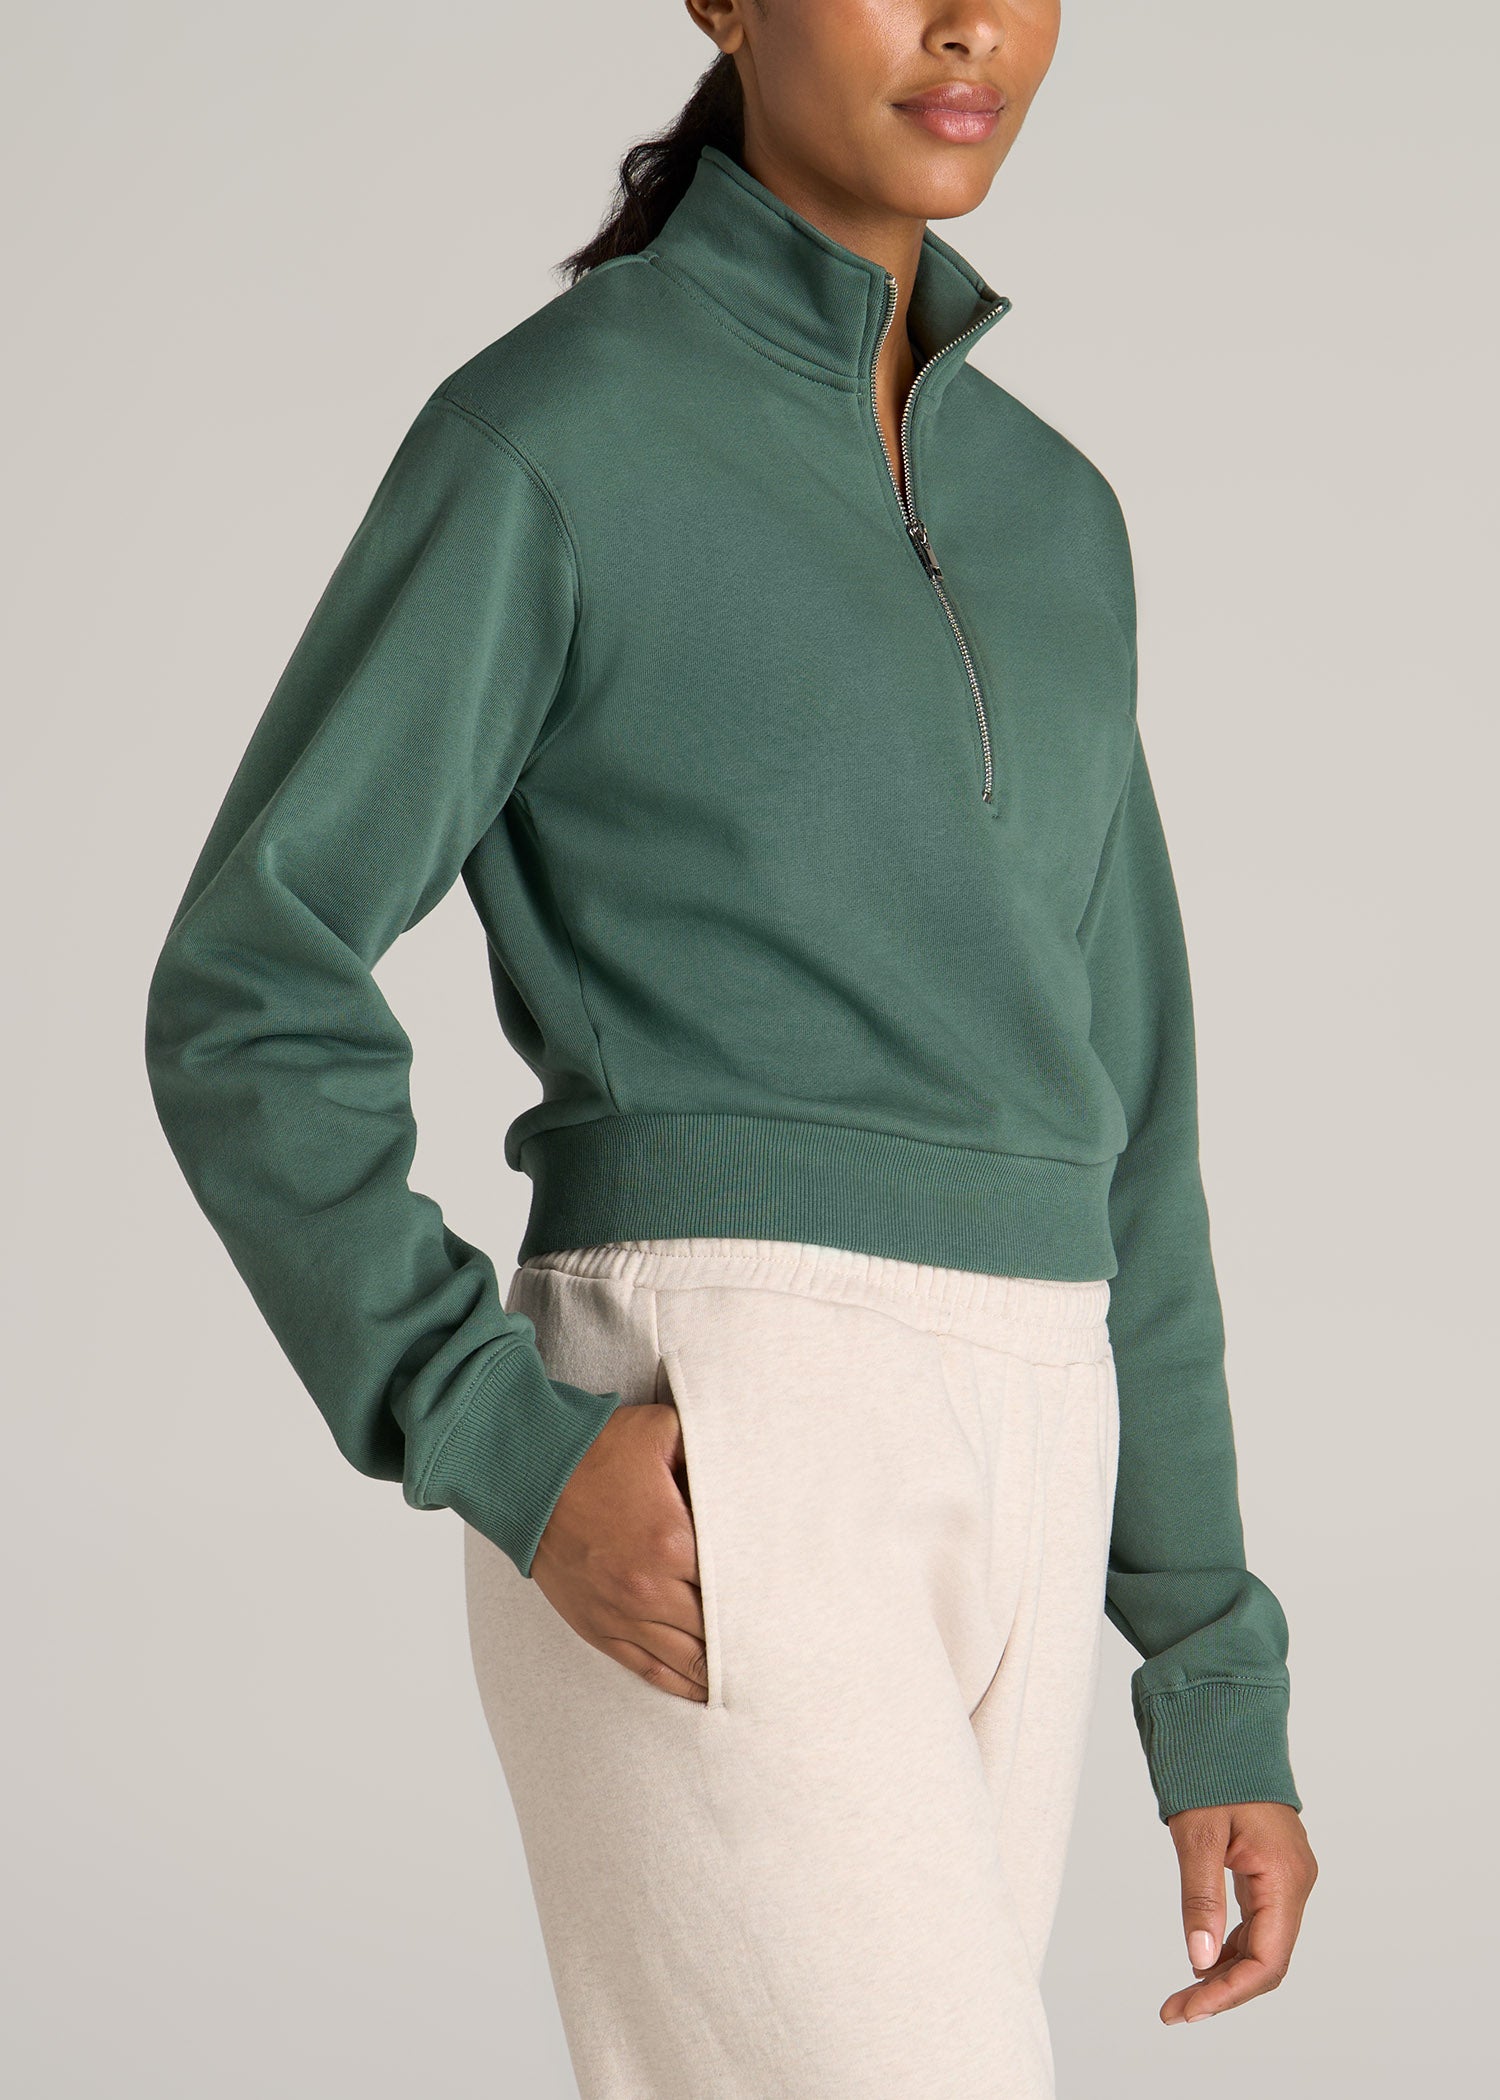 Wearever Women's Full-Zip Fleece Hoodie